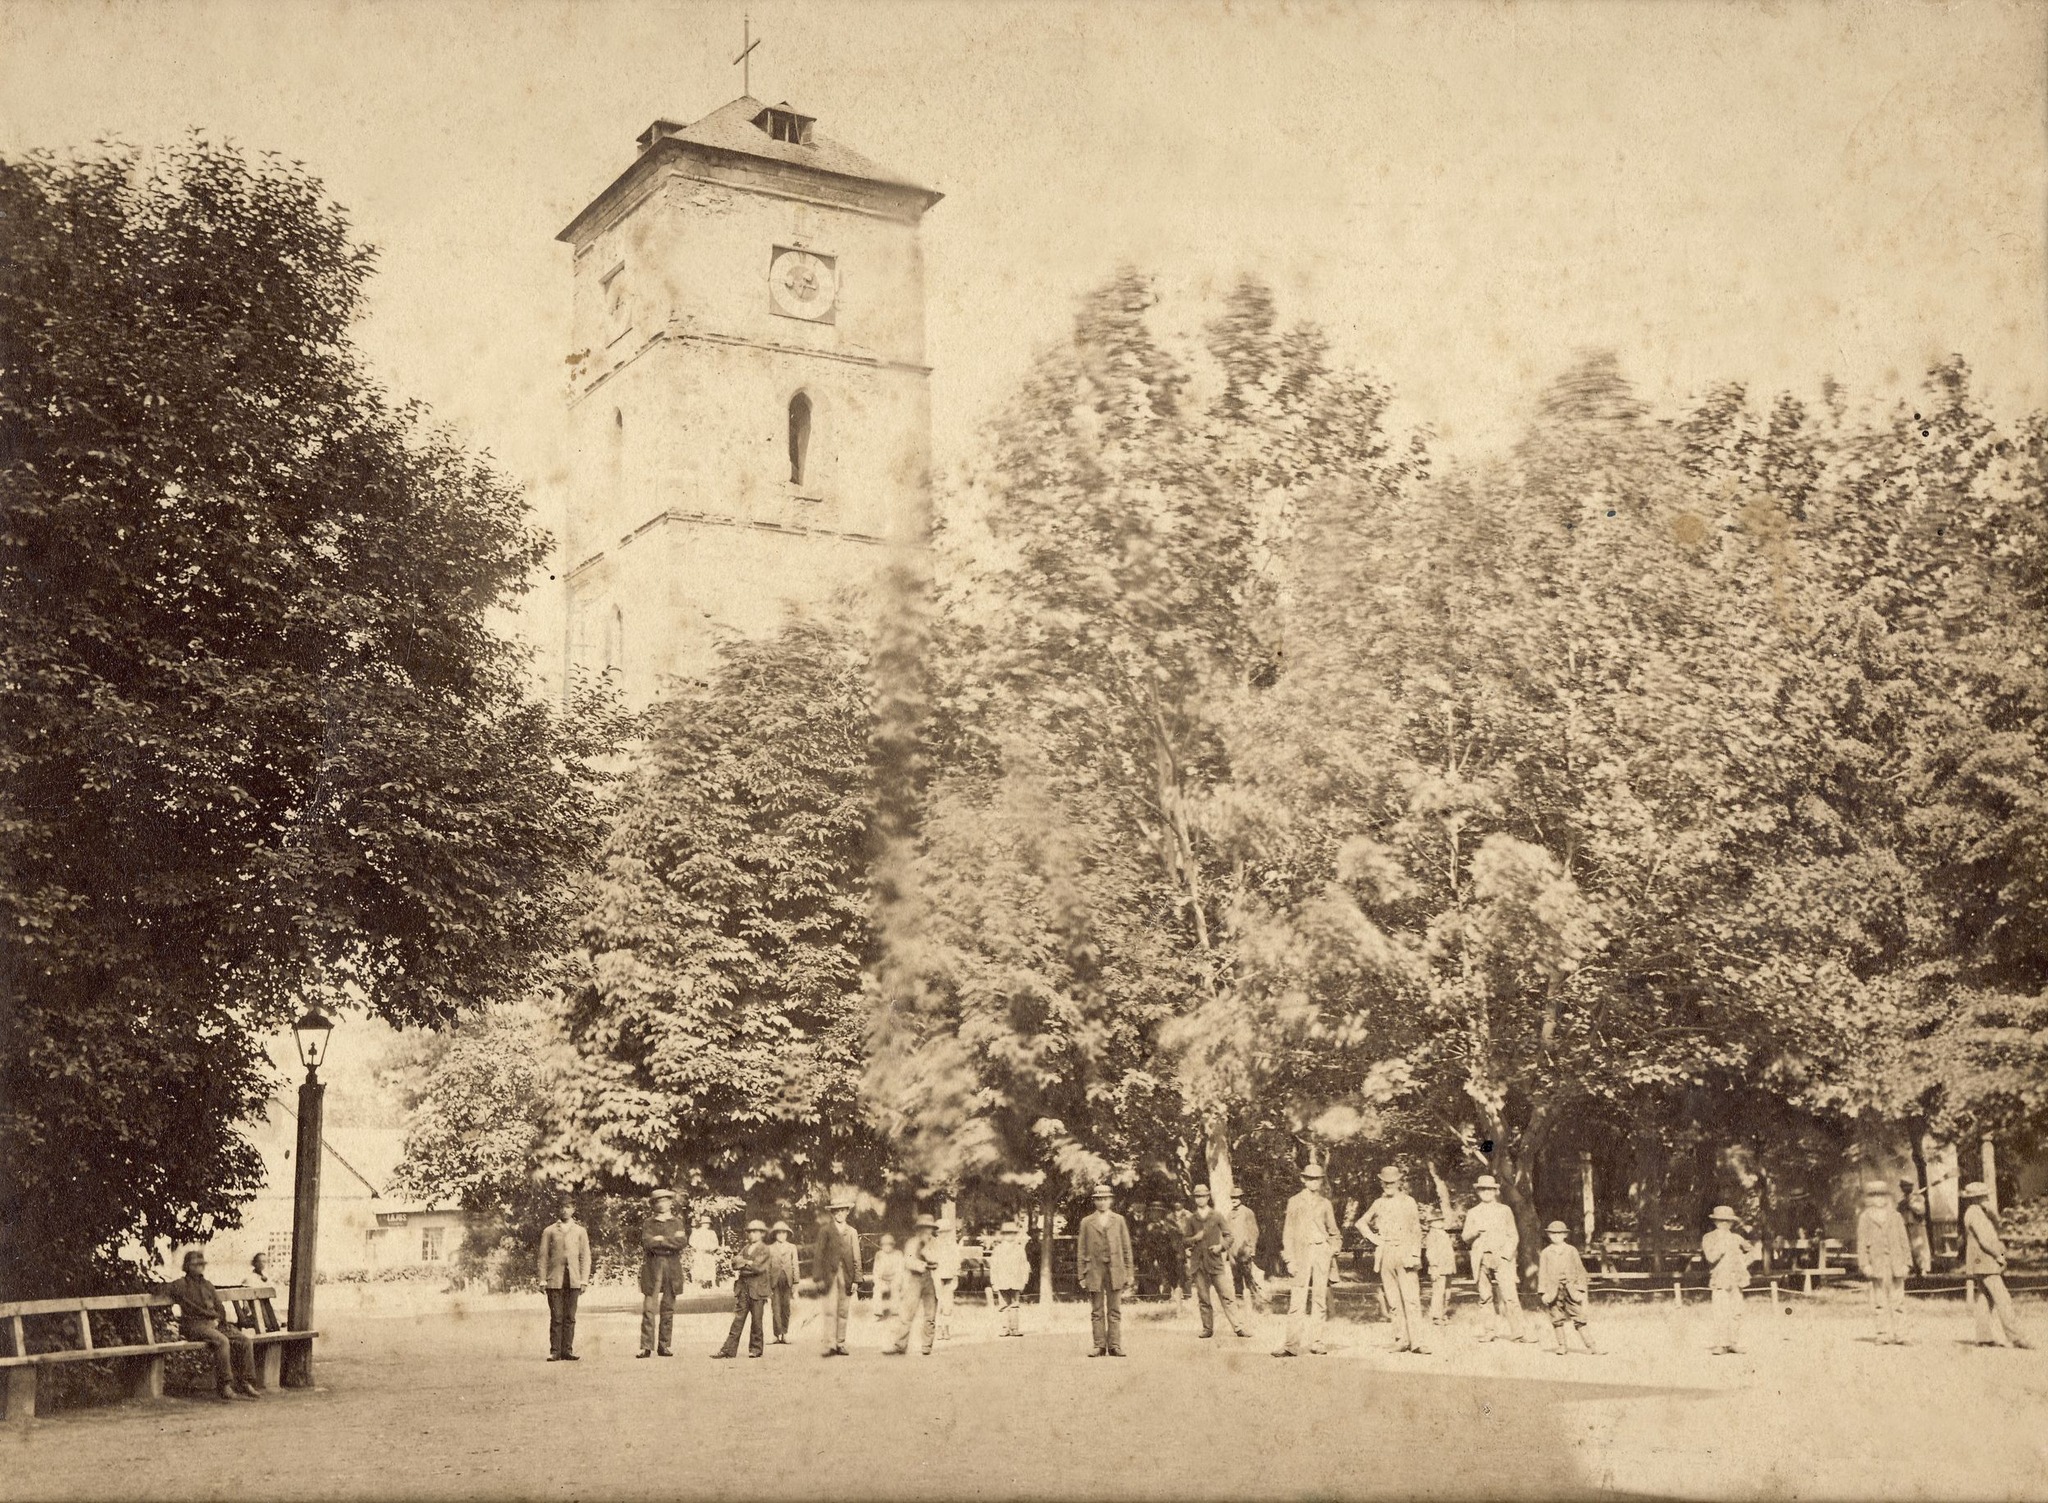 Bisericile străvechi din Baia Mare. Turnul Ștefan, singurul rămas în picioare.